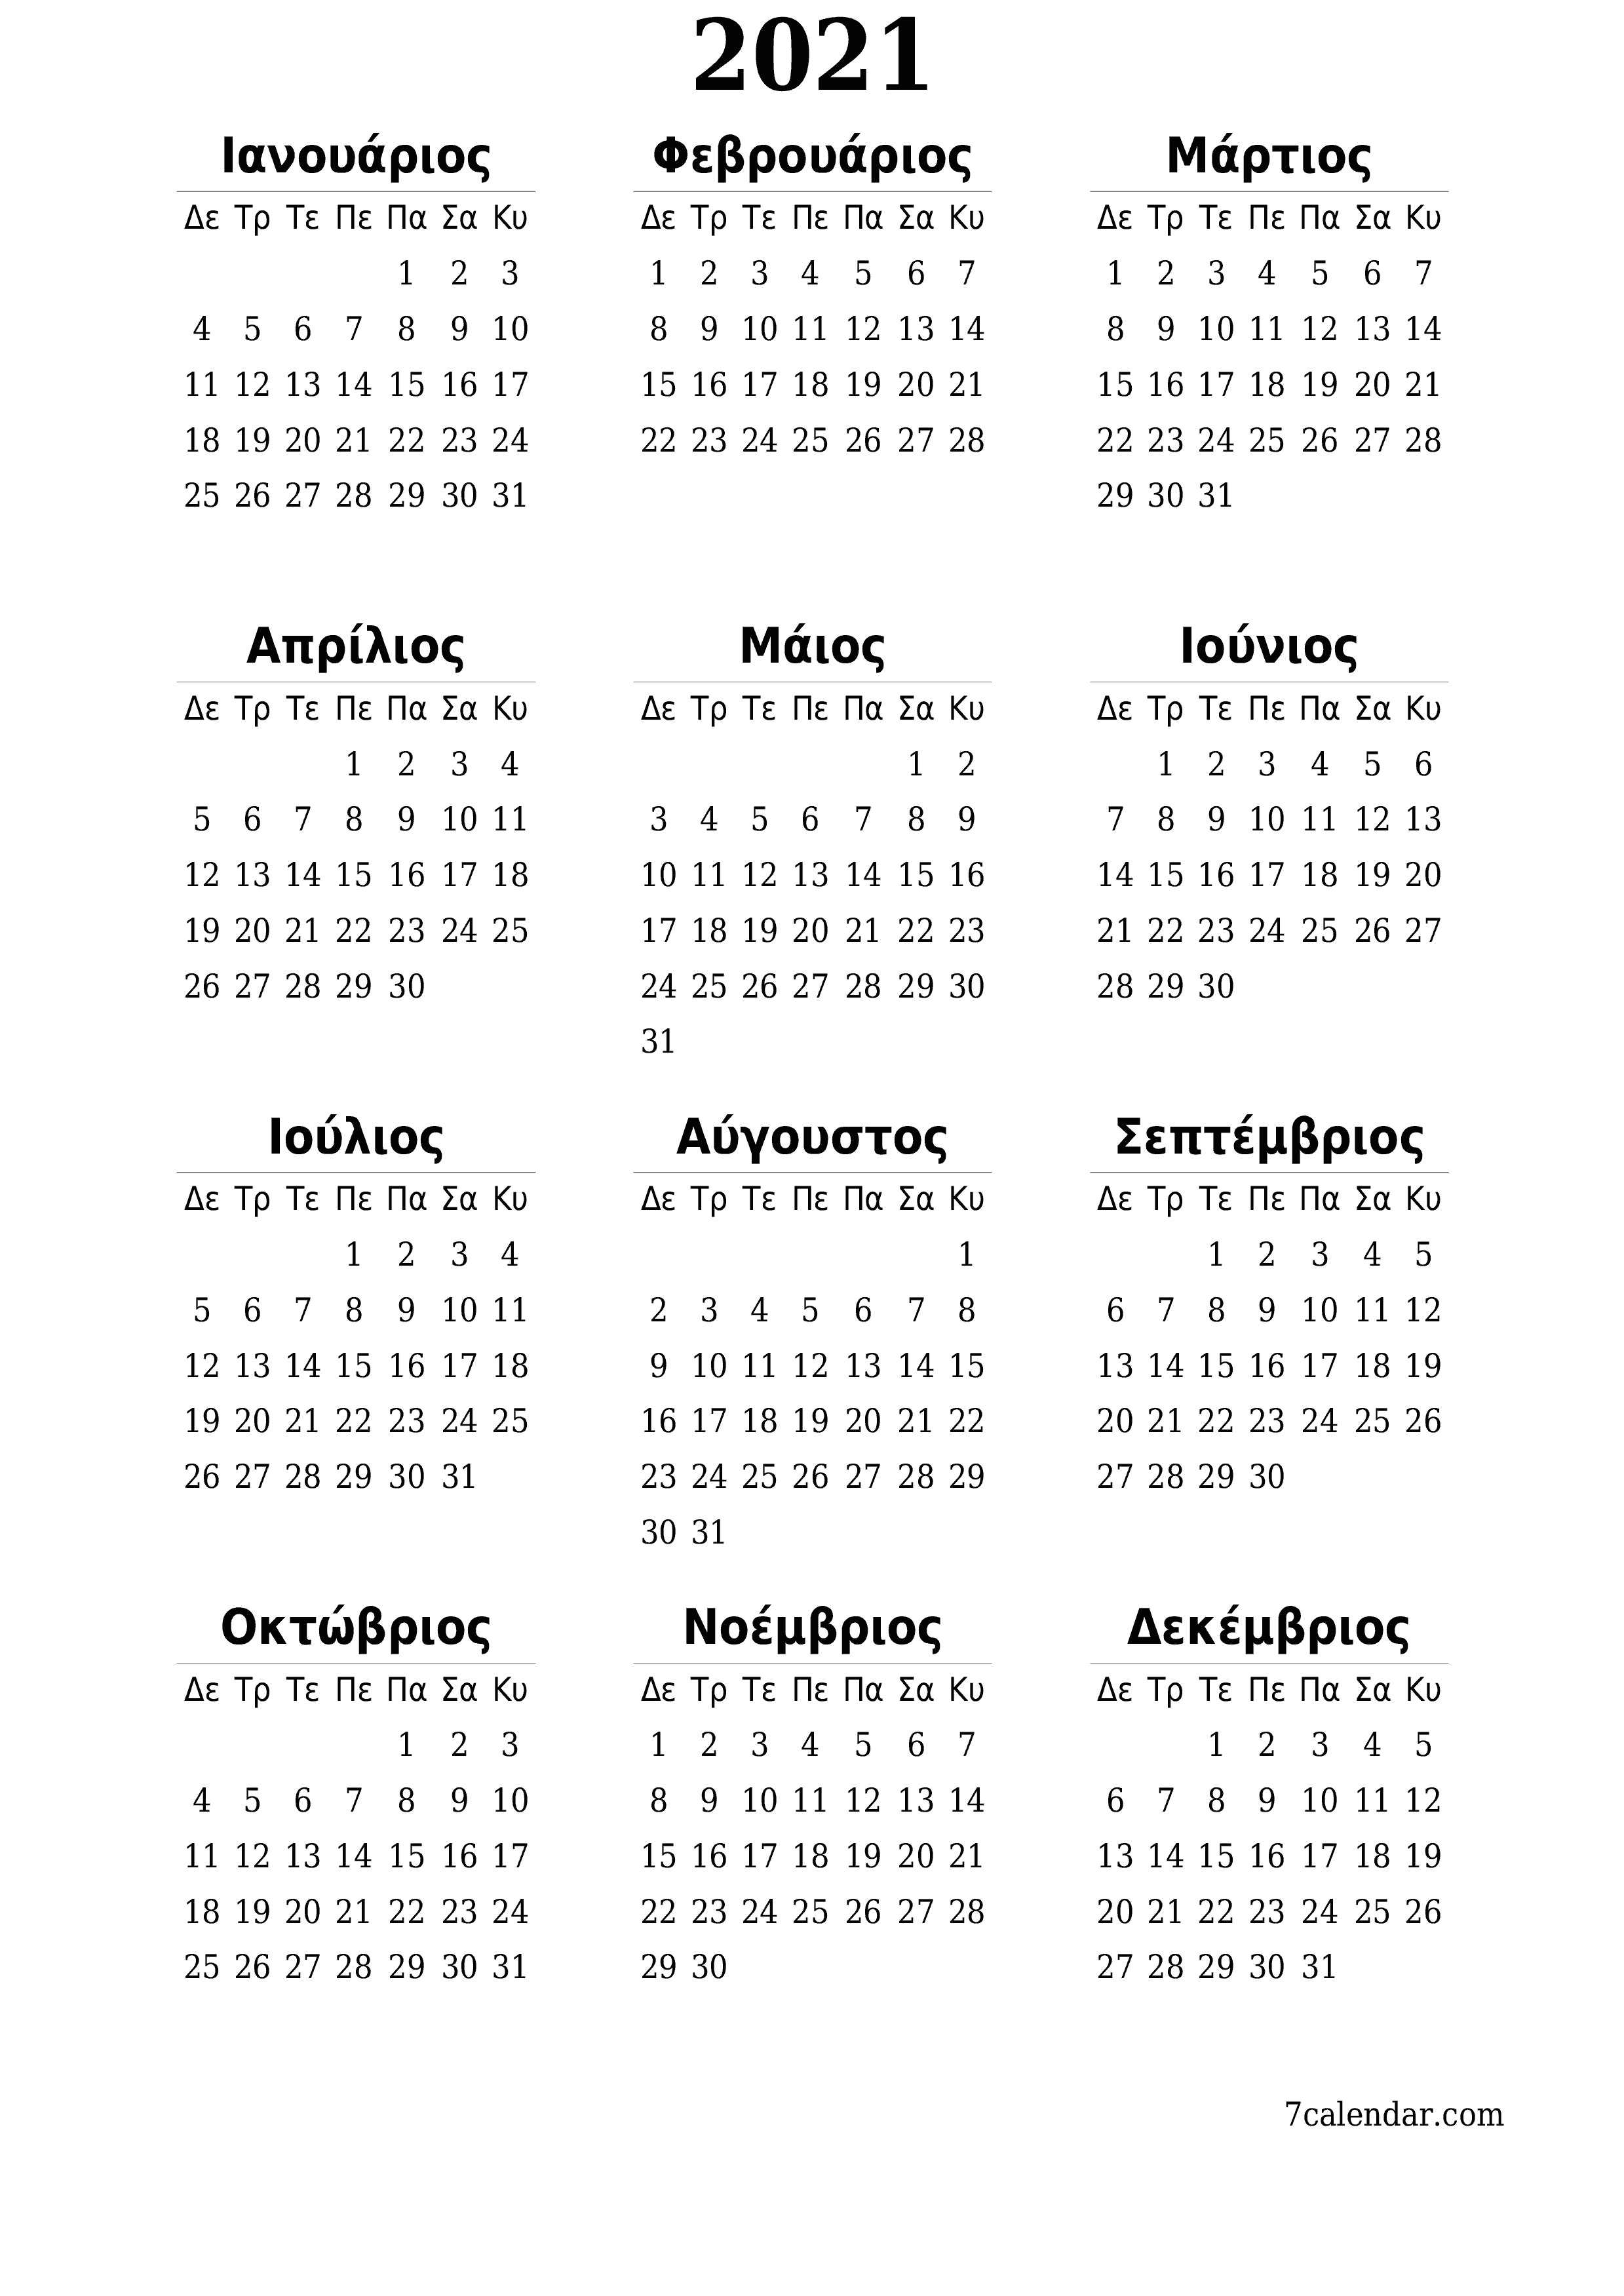 εκτυπώσιμο ημερολόγιο ημερολόγιο τοίχου πρότυπο ημερολογίου δωρεάν ημερολόγιοκατακόρυφος Ετήσιο Ημερολόγιο Μάρτιος (Μαρ) 2021